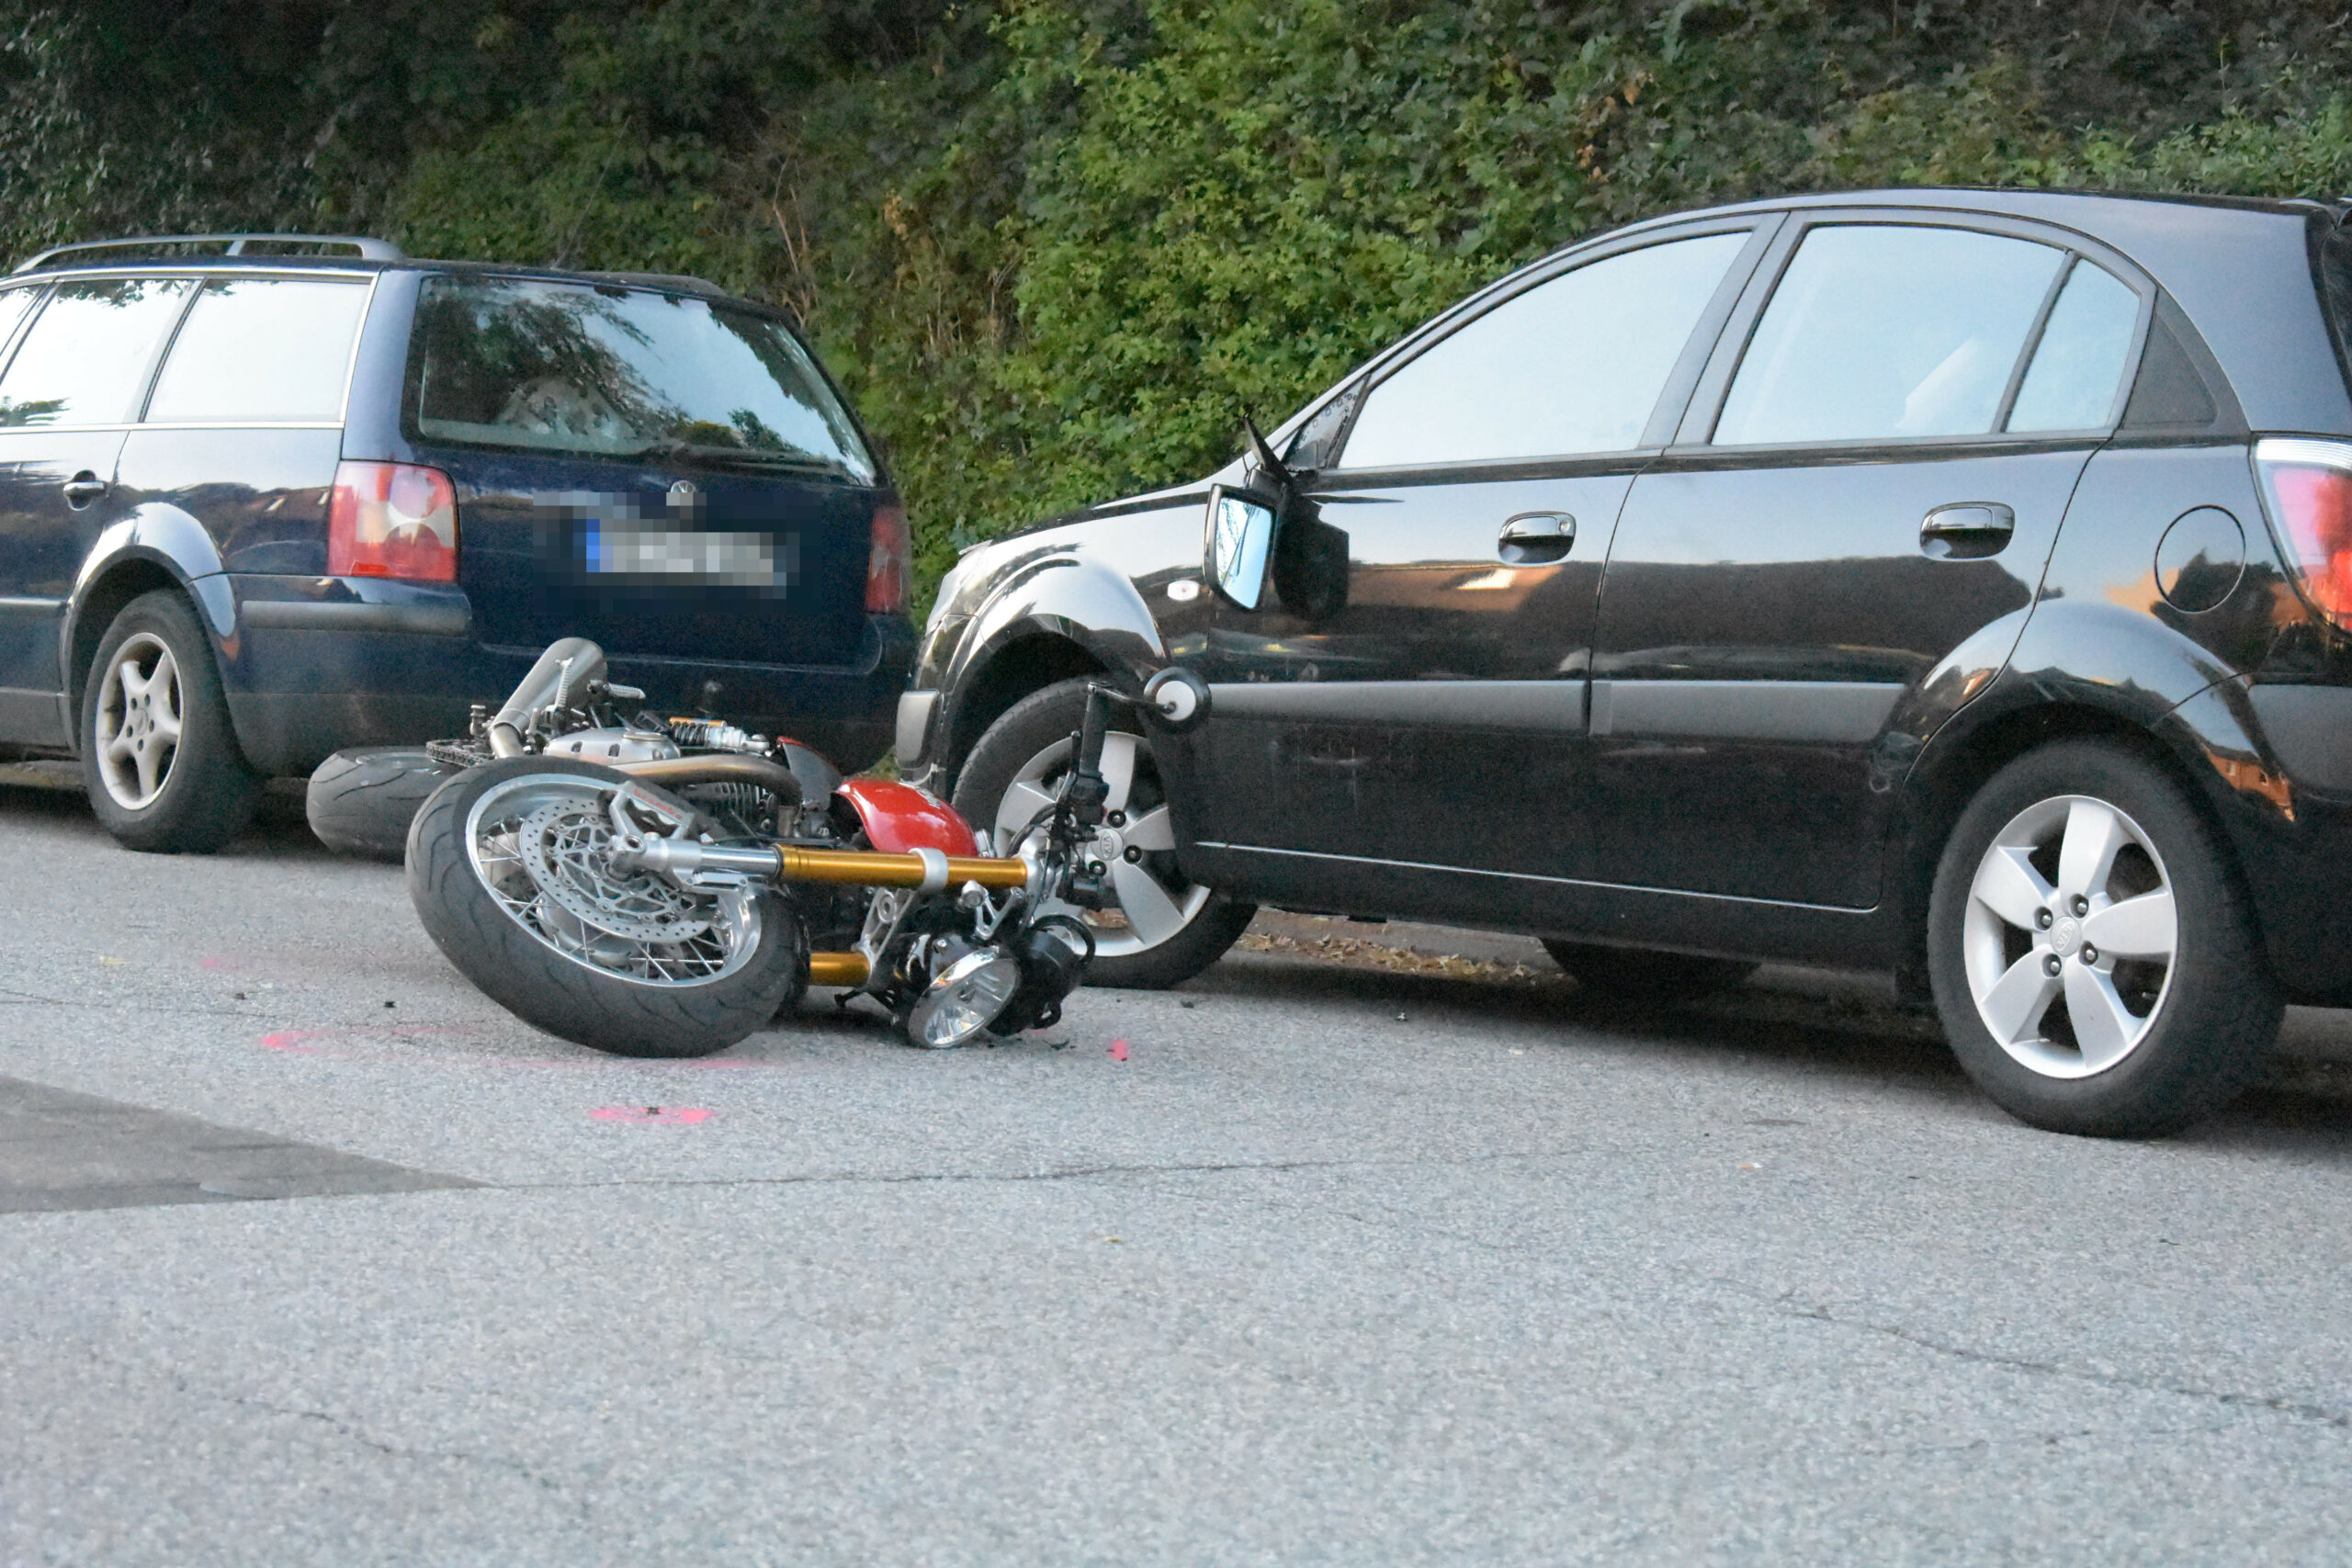 Motorradfahrer rast in geparktes Auto und wird schwer verletzt.